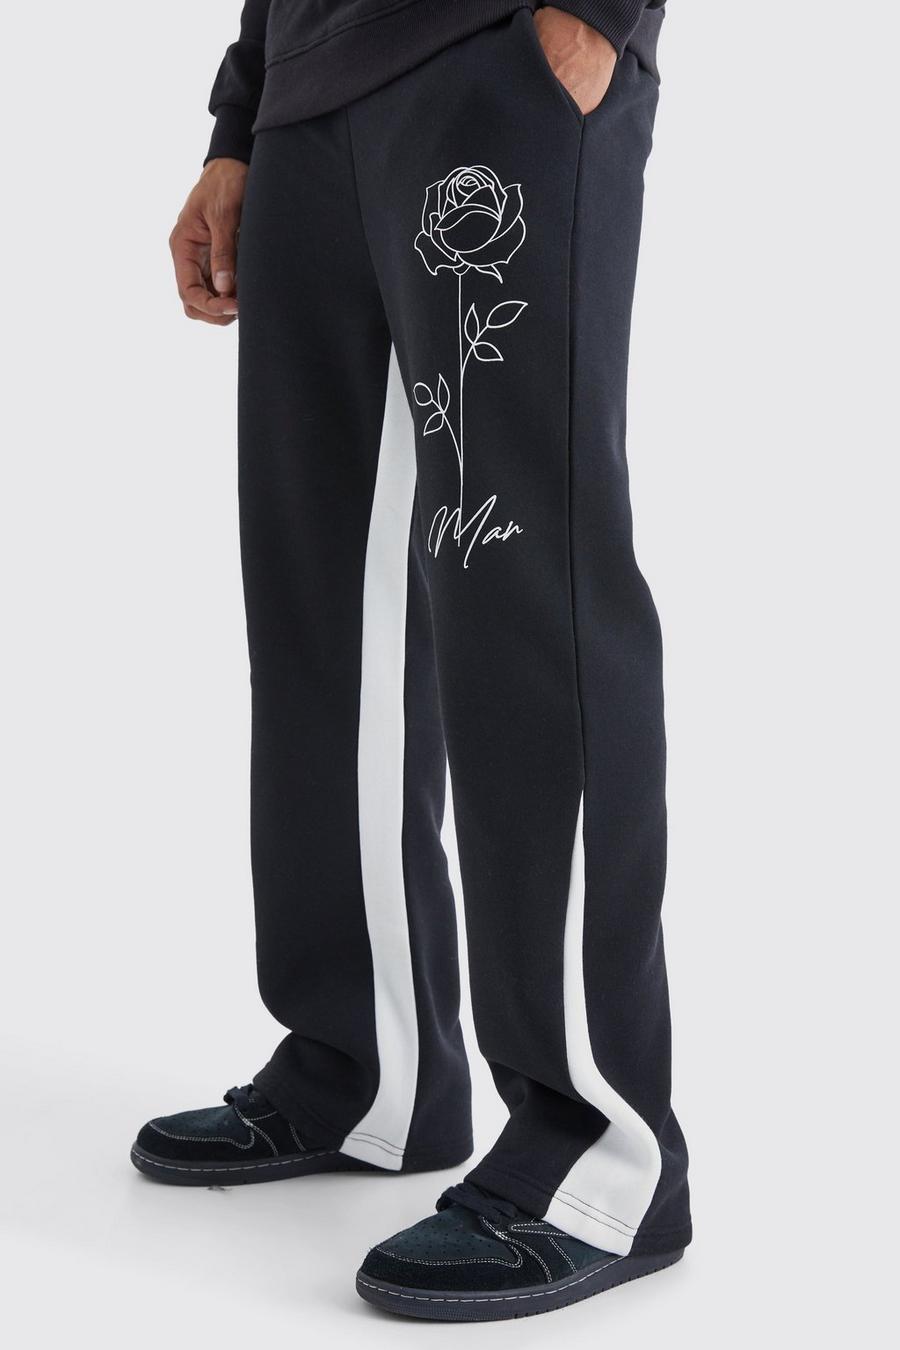 Pantalón deportivo MAN con refuerzo y estampado de rosas, Black